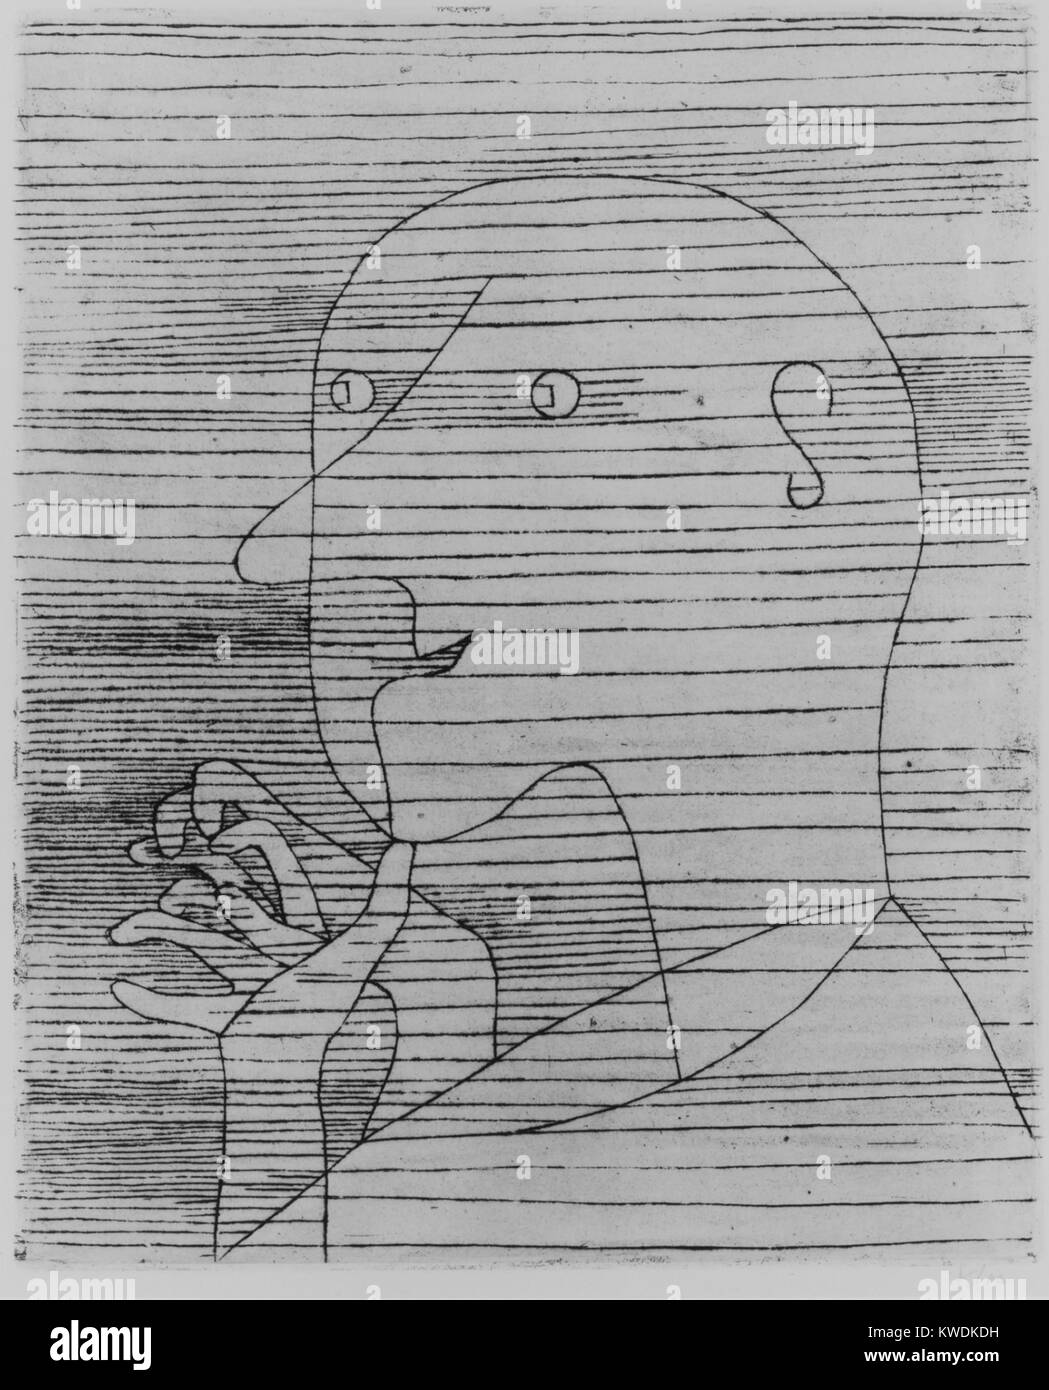 Alter Mann zählen, von Paul Klee, 1929, Schweizer drucken, Radierung. Klees Titel sind oft wichtig mit seinen Bildern zu schätzen. Das eine führt zur Meditation von Alterung und Sterblichkeit (BSLOC 2017 7 25) Stockfoto